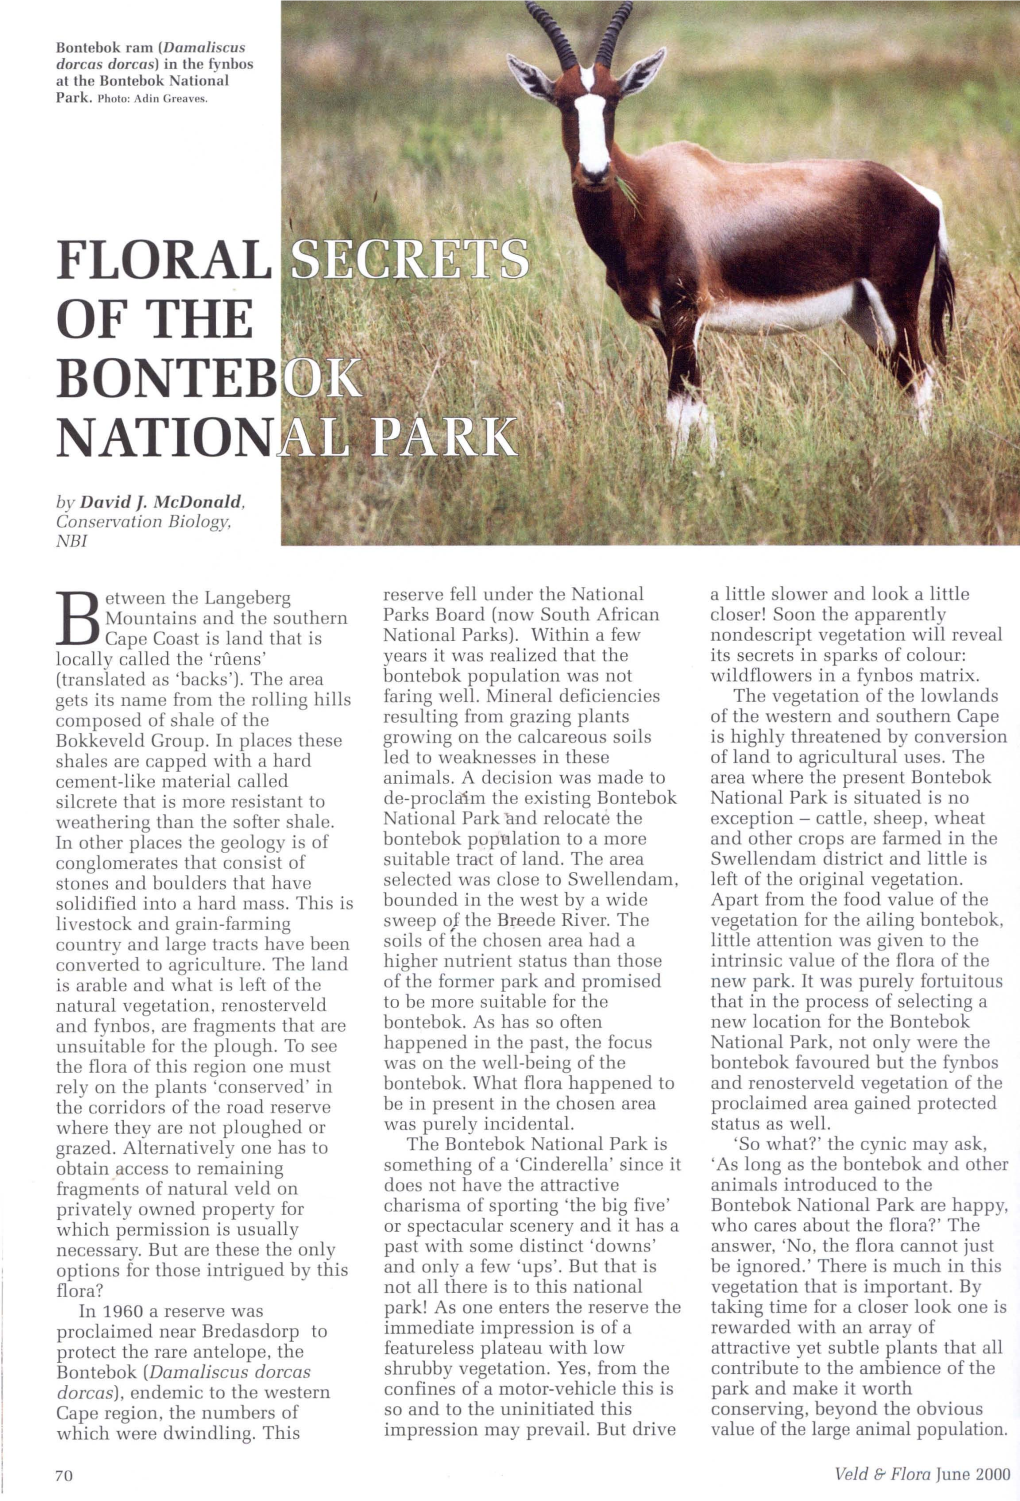 Floral Secrets of the Bontebok National Park